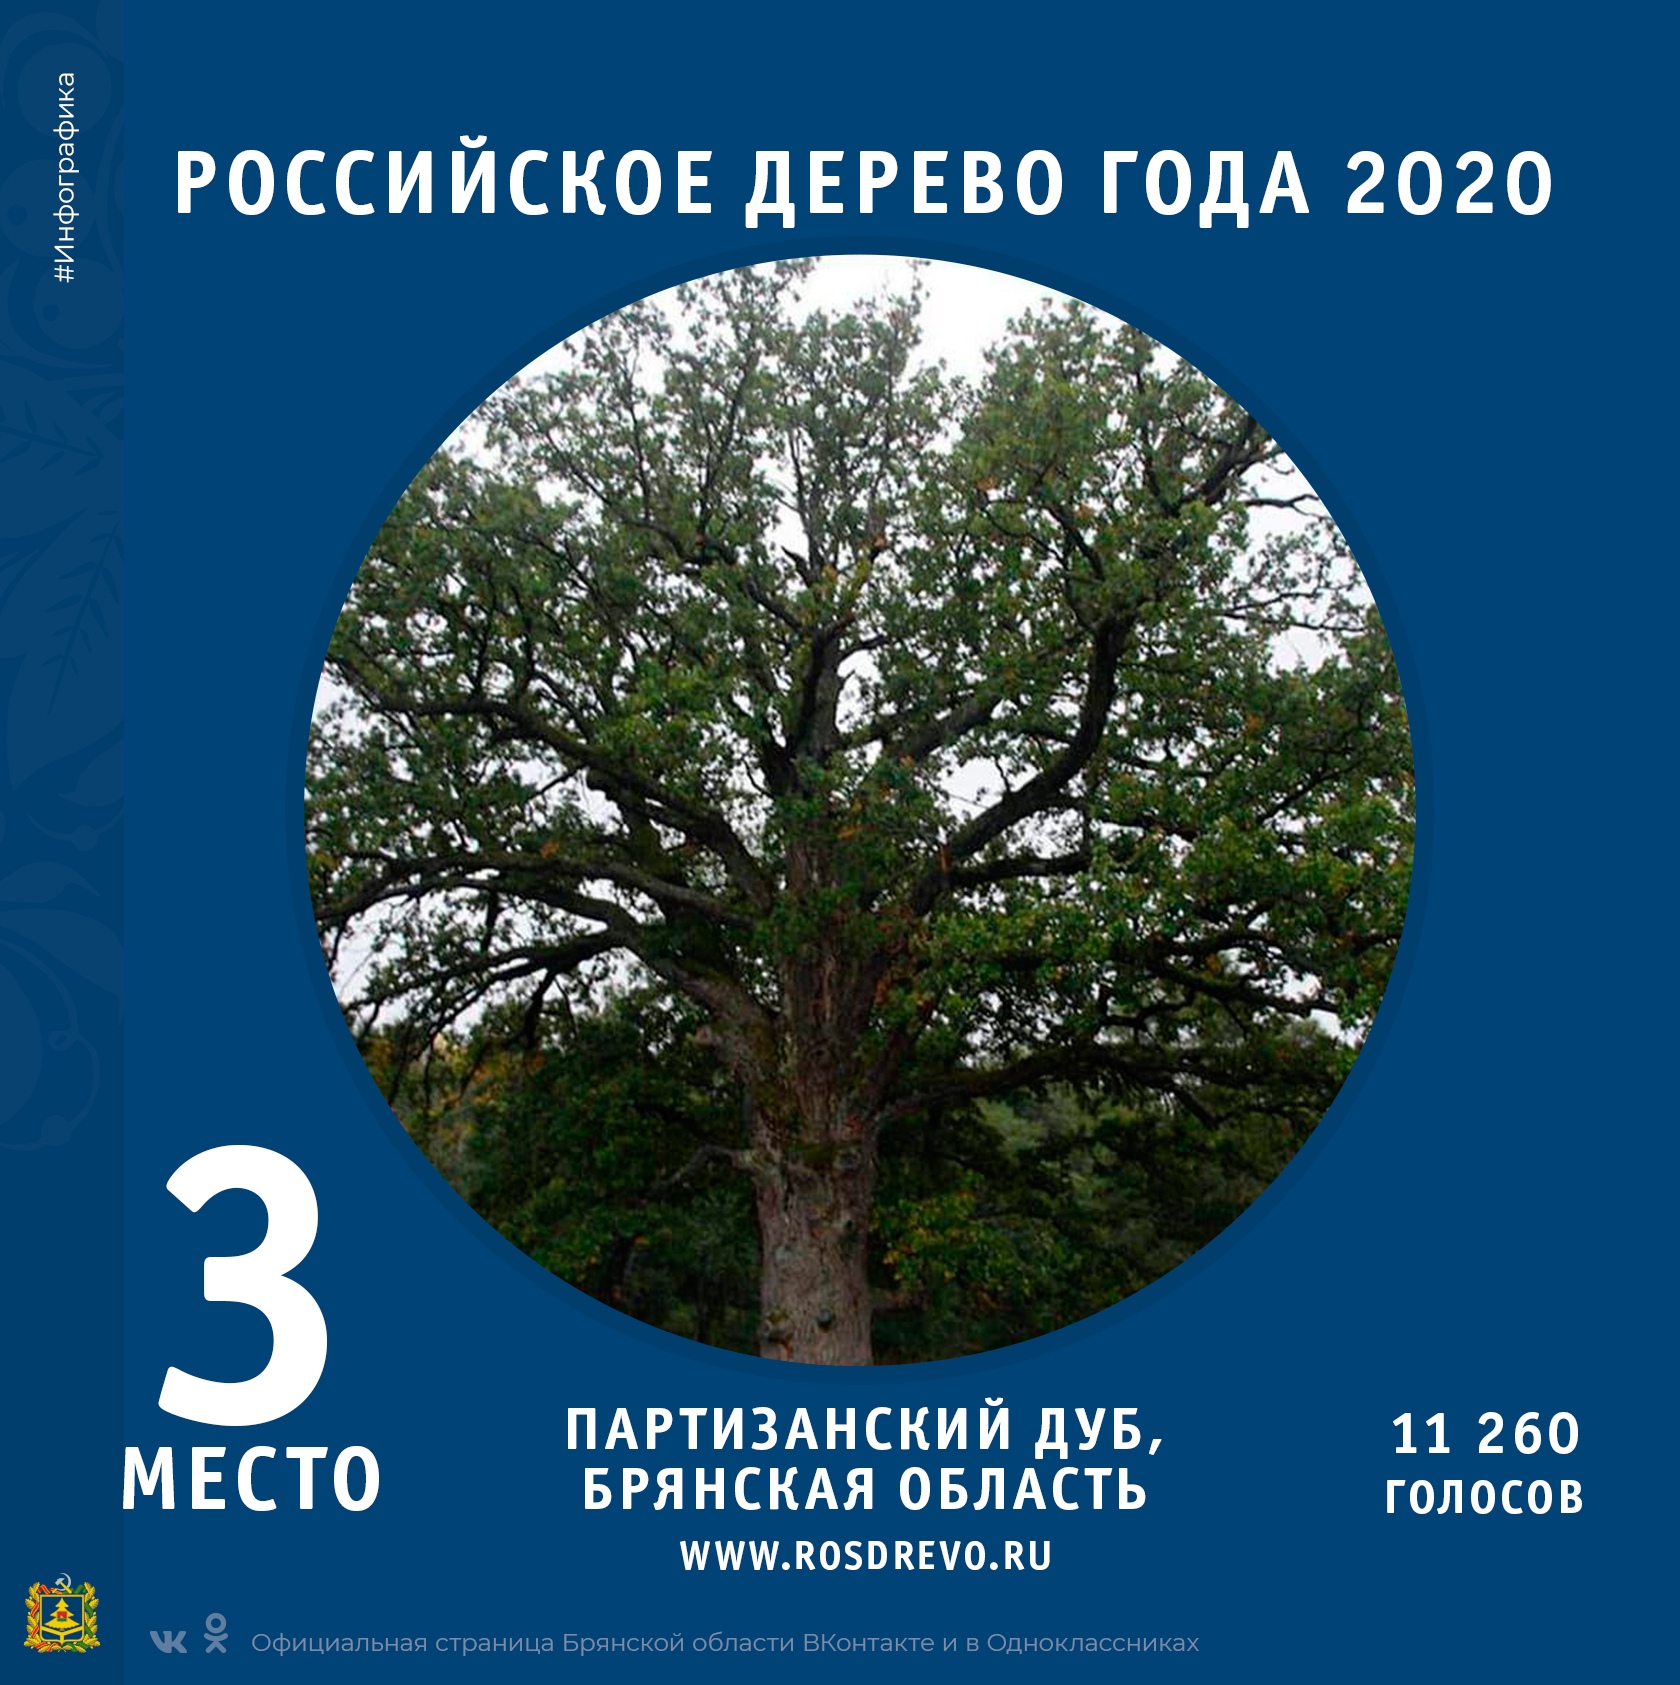 Брянский «Партизанский дуб» занял третье место в конкурсе «Российское дерево года 2020»